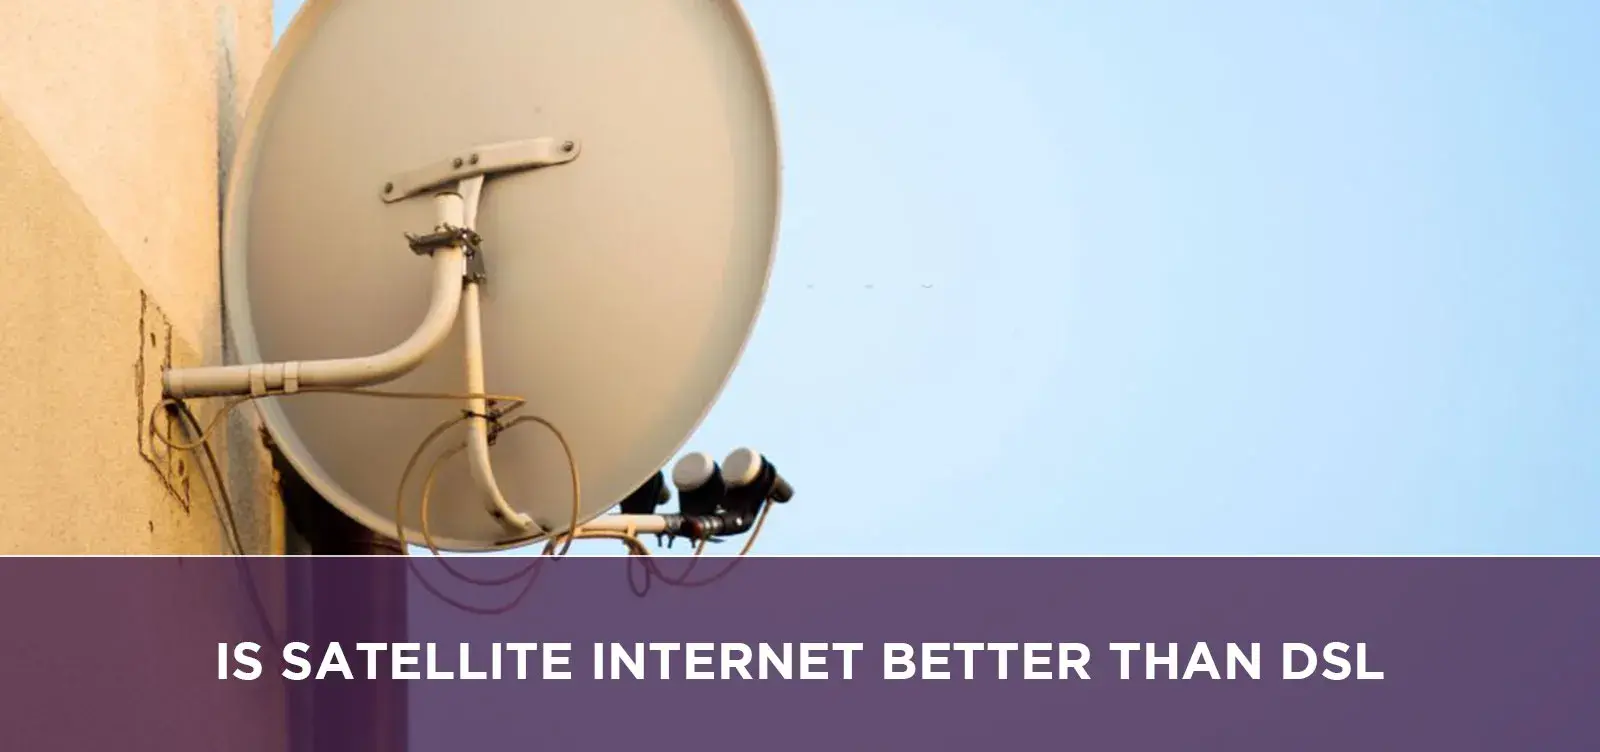 Is Satellite Internet Better Than Dsl?